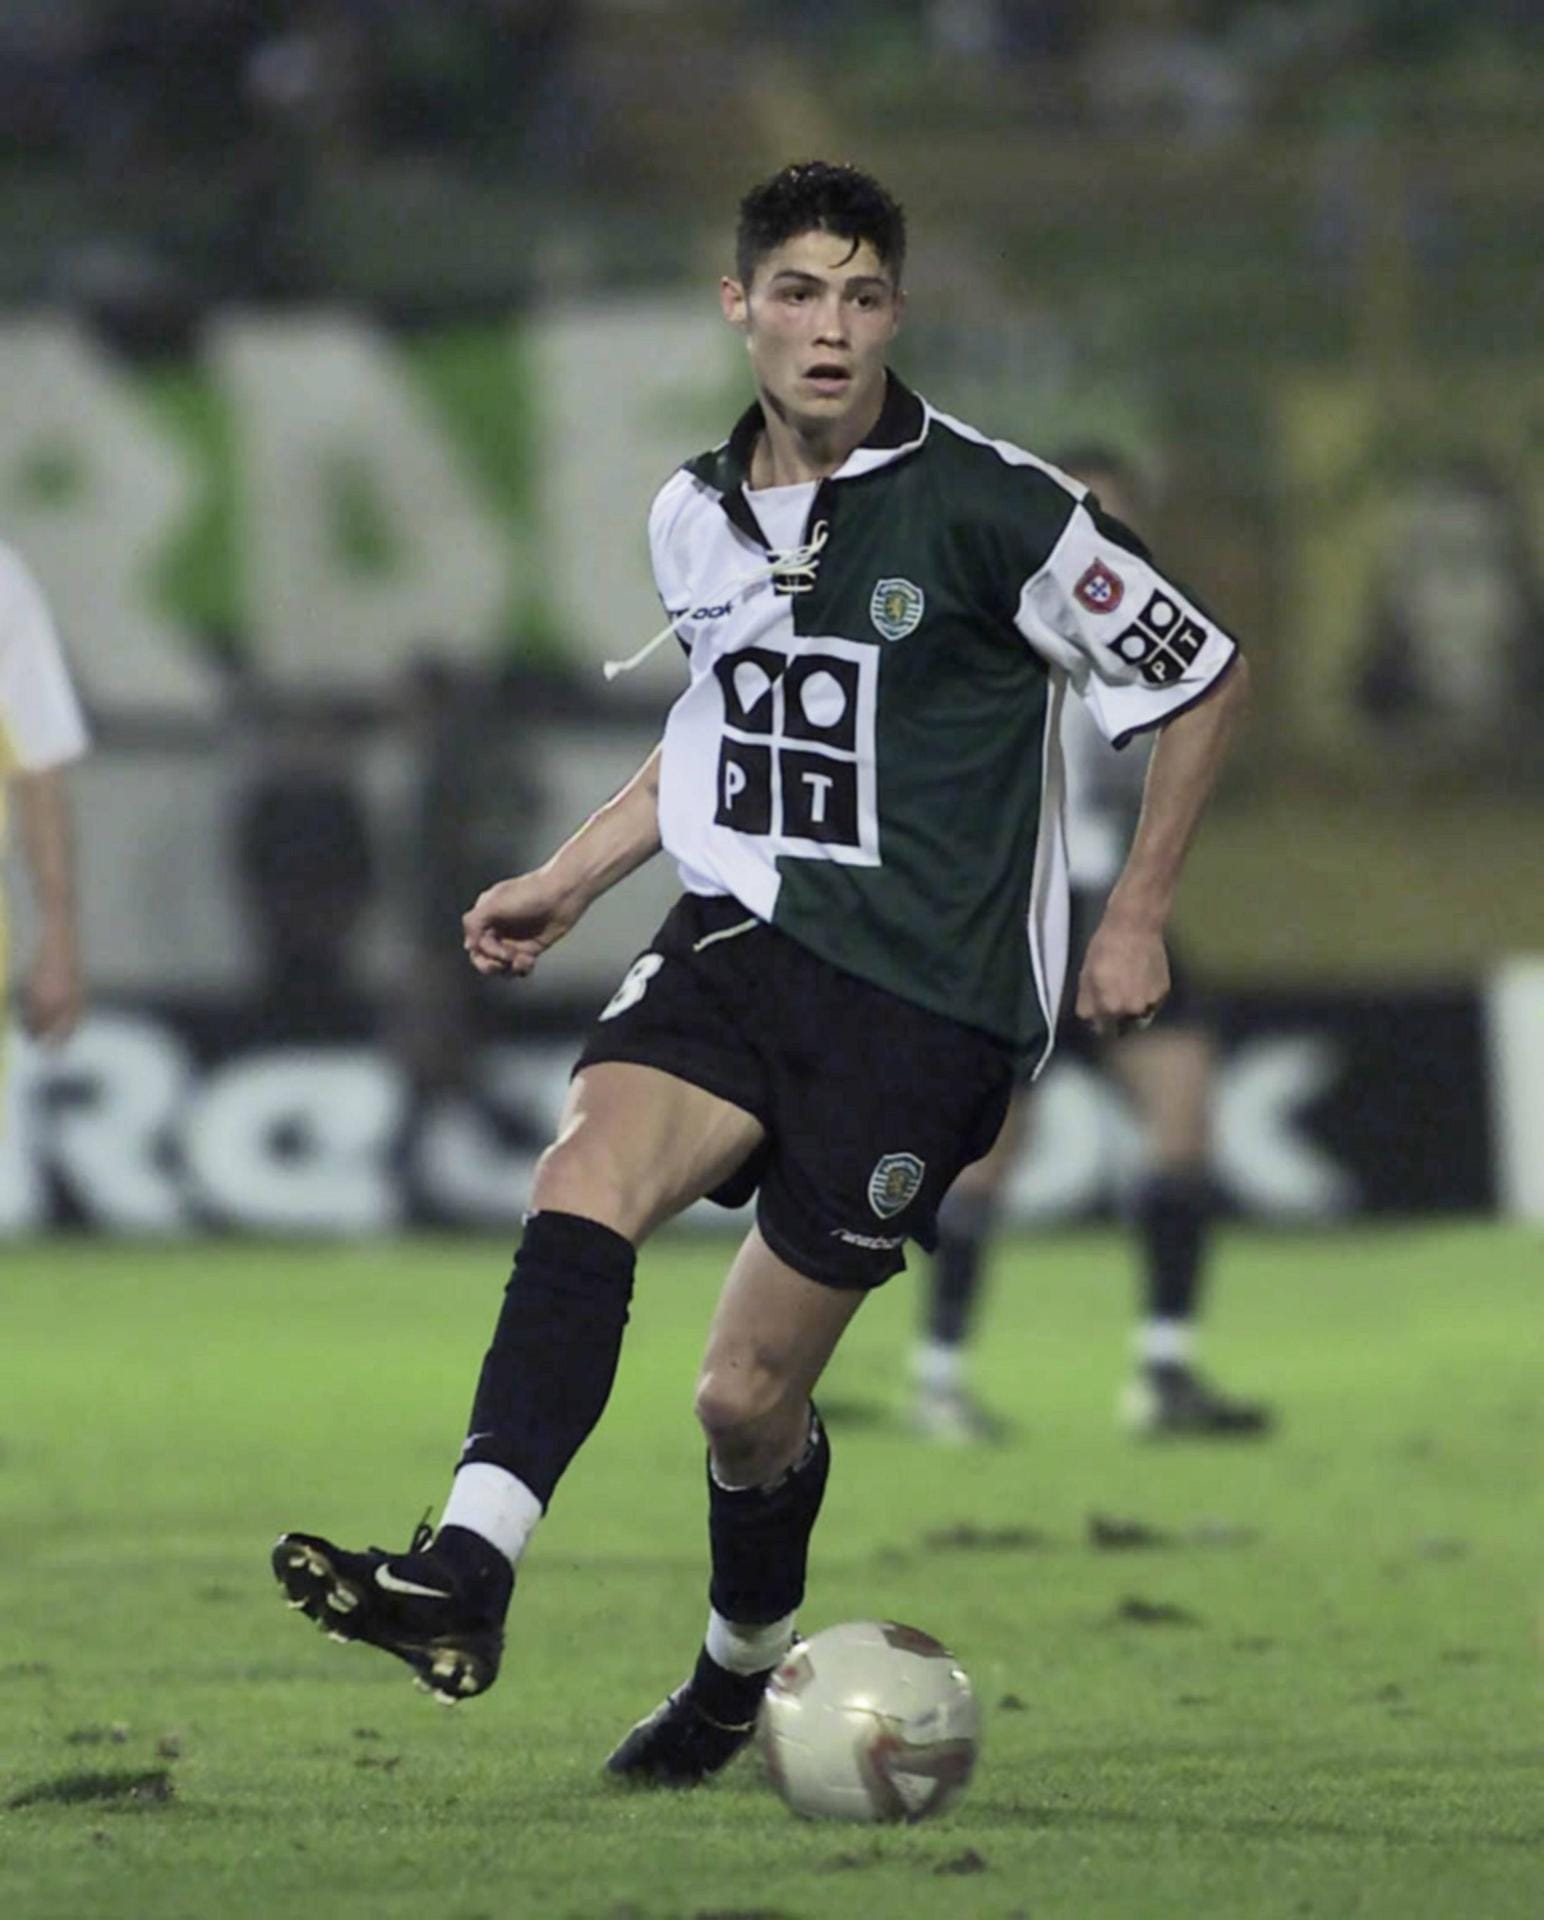 2002 bei Sporting Lissabon: Seit 1998 spielte der Weltklasse-Fußballer beim portugiesischen Erstliga-Klub. Angefangen hat der Spitzen-Sportler bei der U15.